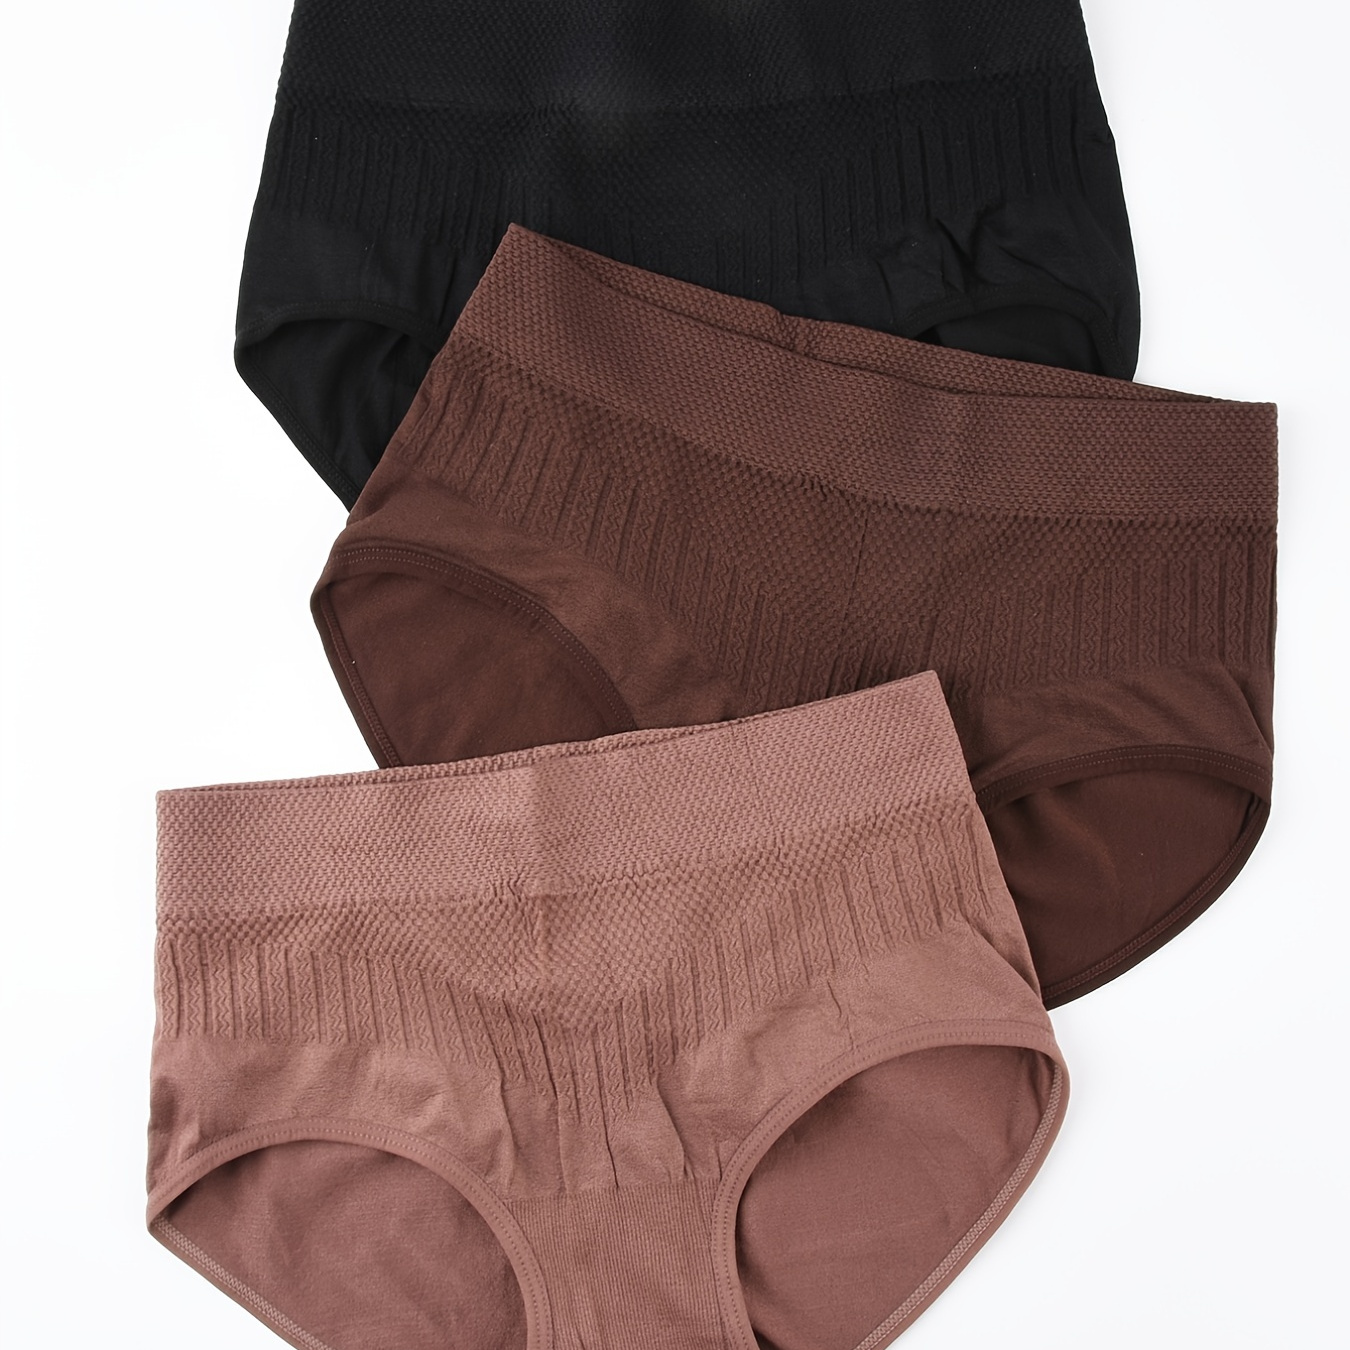 

3pcs Seamless Texture Briefs, Comfort Butt Lifting Mid Waist Elastic Panties, Women's Lingerie & Underwear